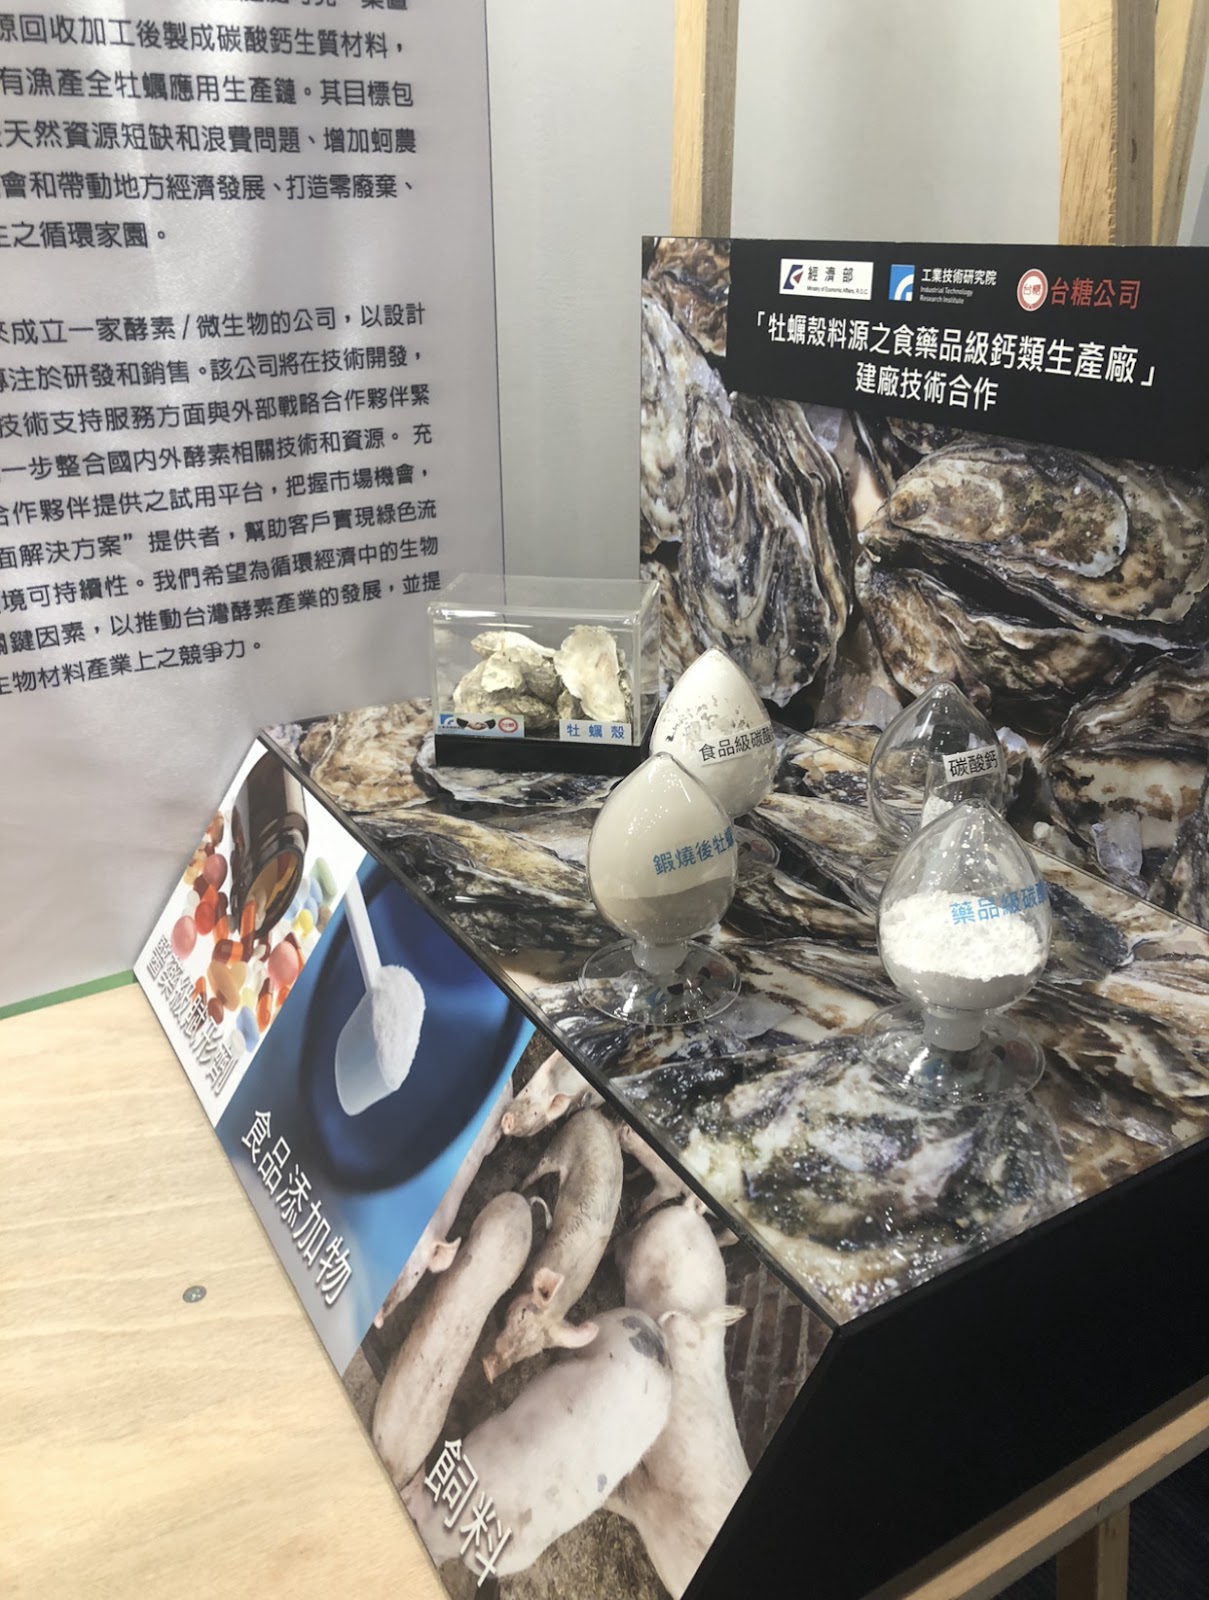 2019/10攝於亞太循環經濟論壇場外展覽，台糖公司與工研院的廢牡蠣合作計畫。